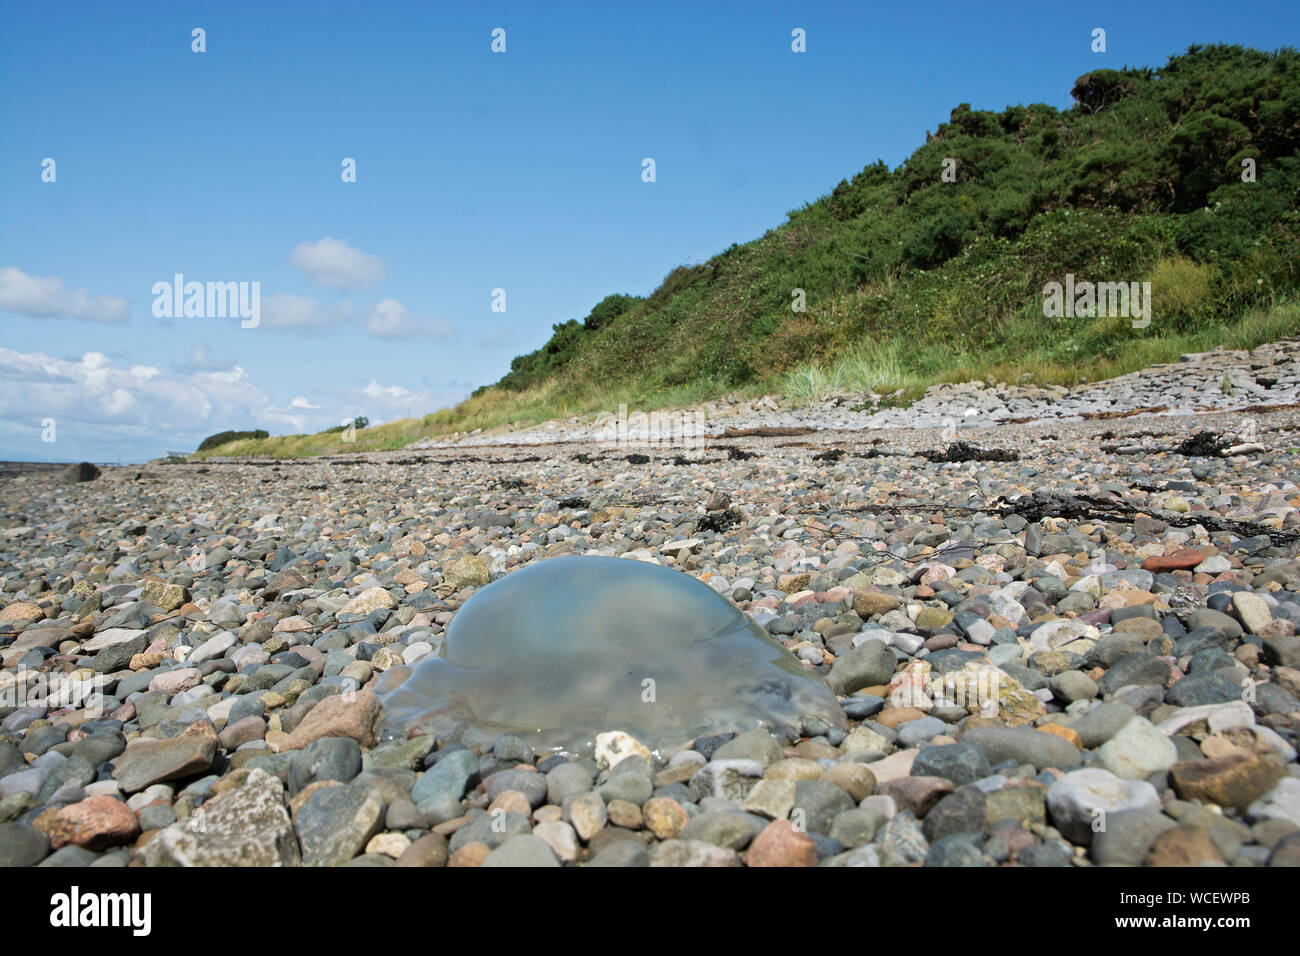 Jellyfish washed up on a stony beach, Lancashire, UK Stock Photo